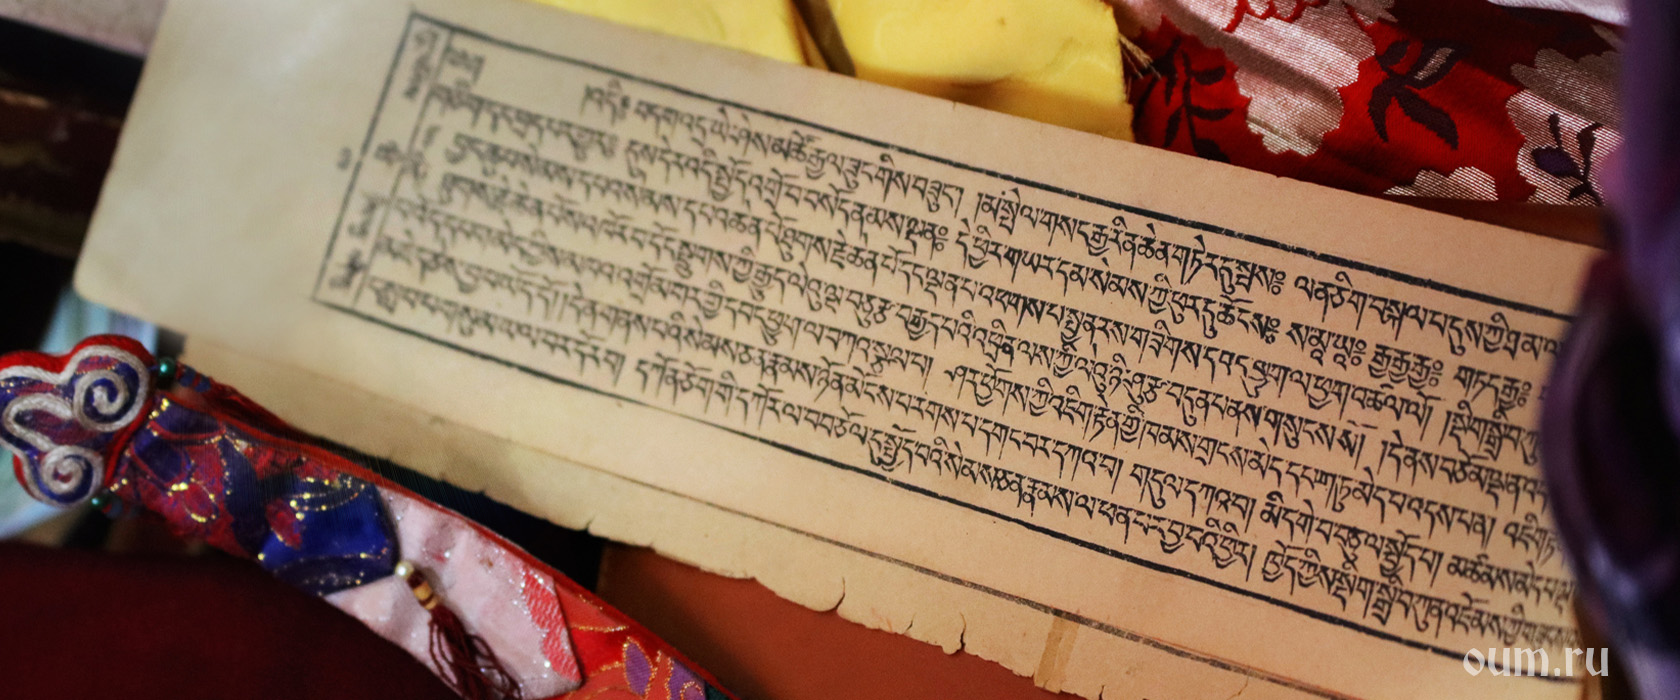 Почему три корзины мудрости: значение имени священной книги буддистов на русском языке